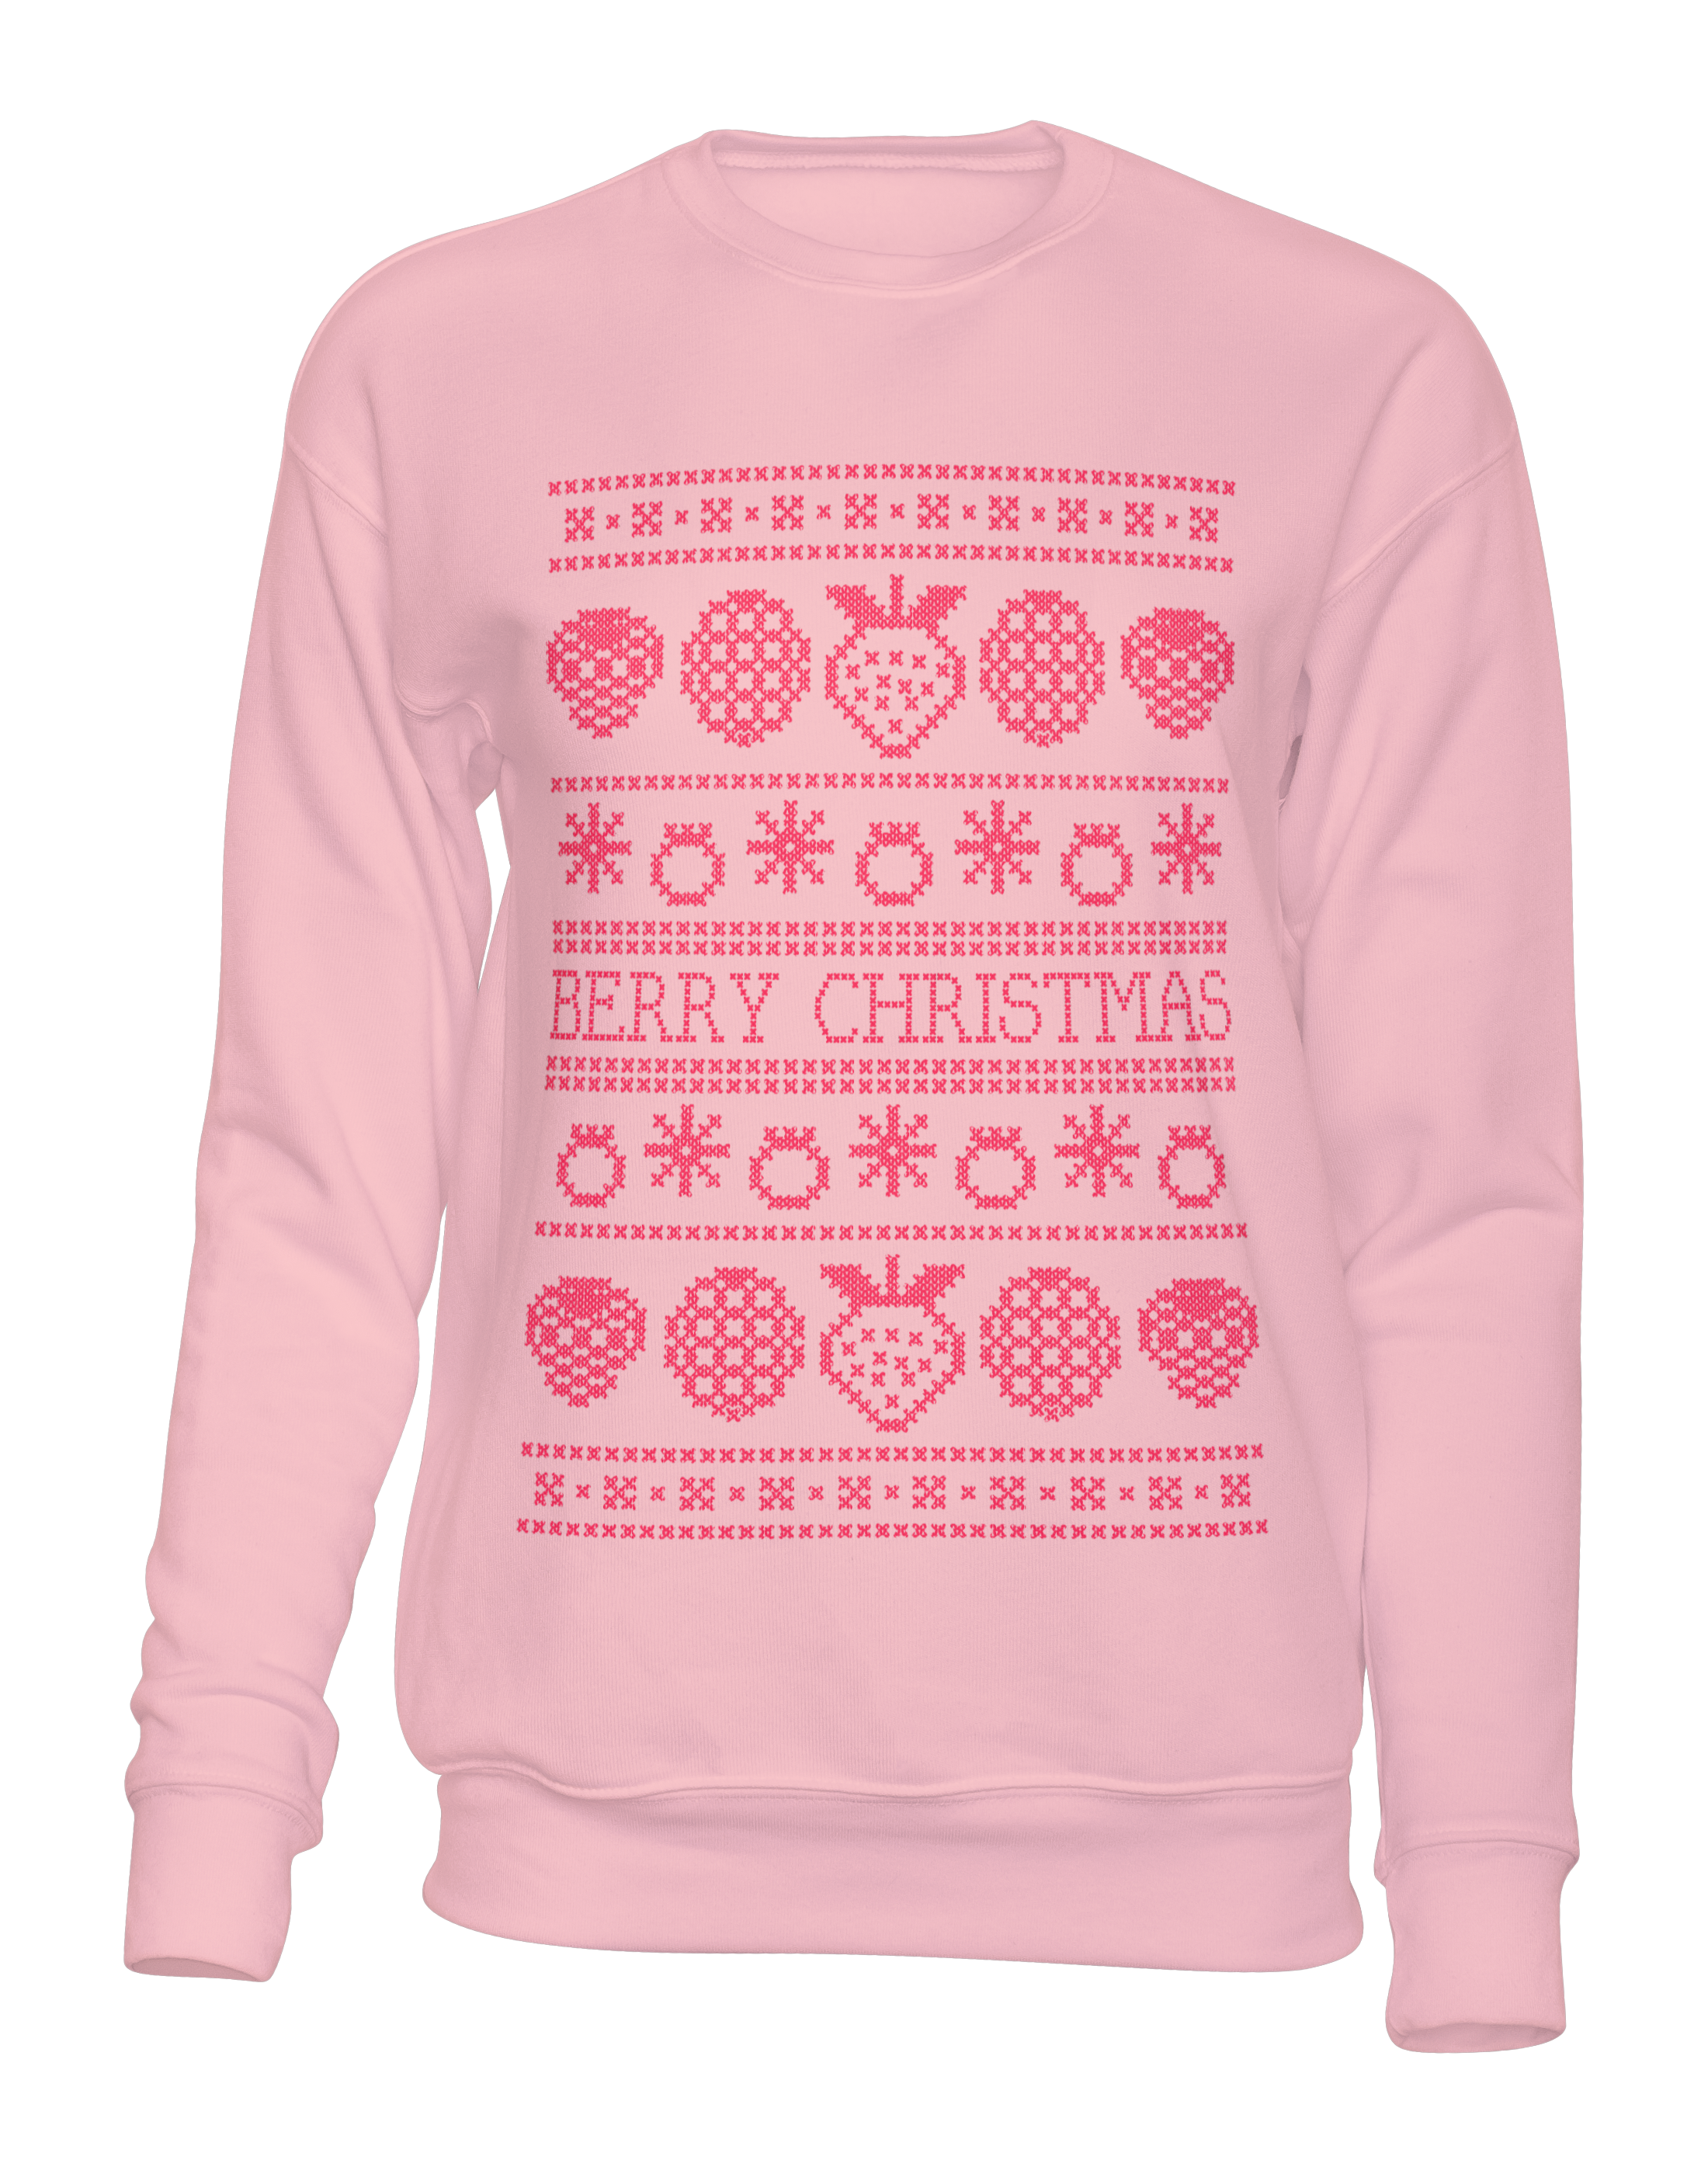 Berry Christmas - Unisex Sweatshirt